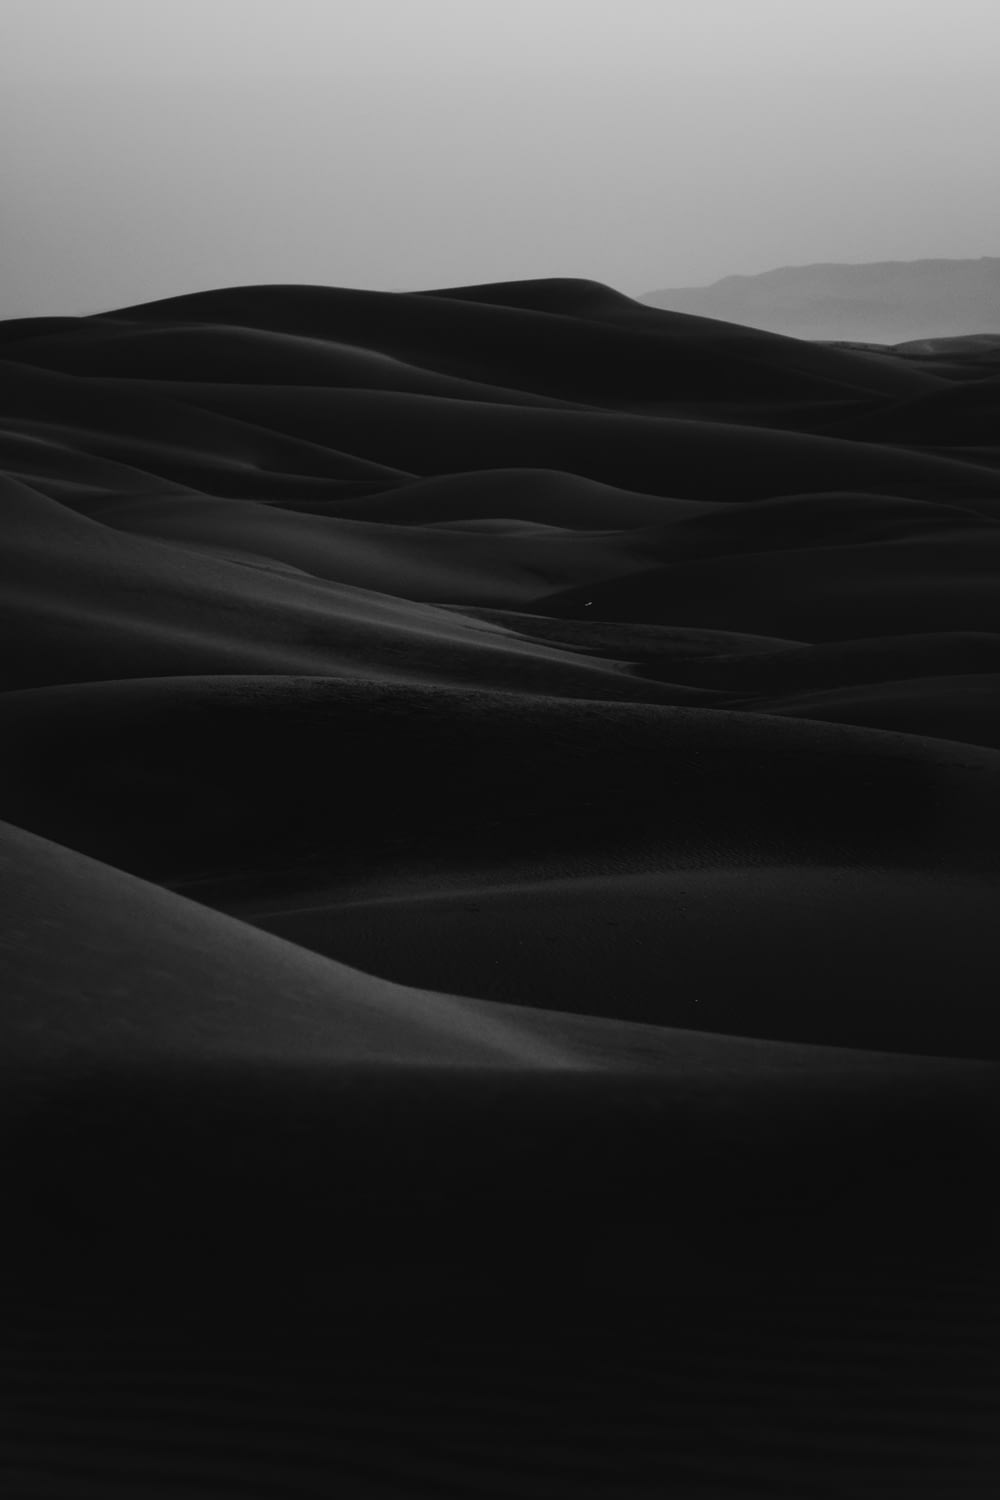 砂漠のグレースケール写真